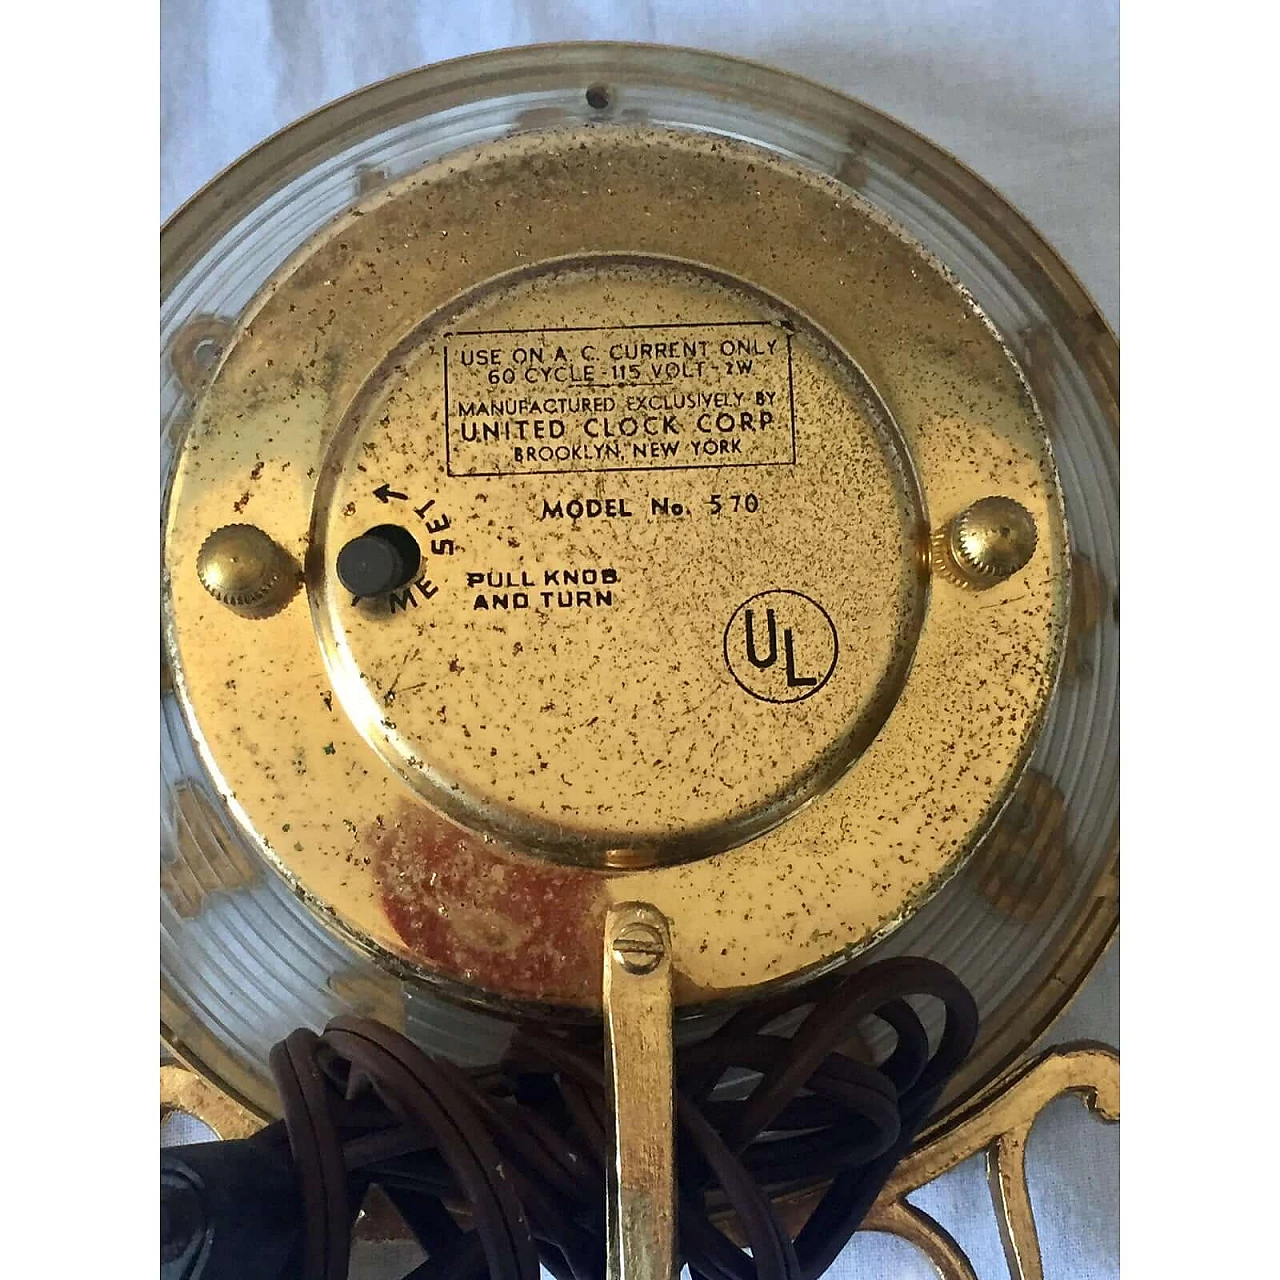 Orologio sveglia 570 di United Clock Corp, anni '40 2